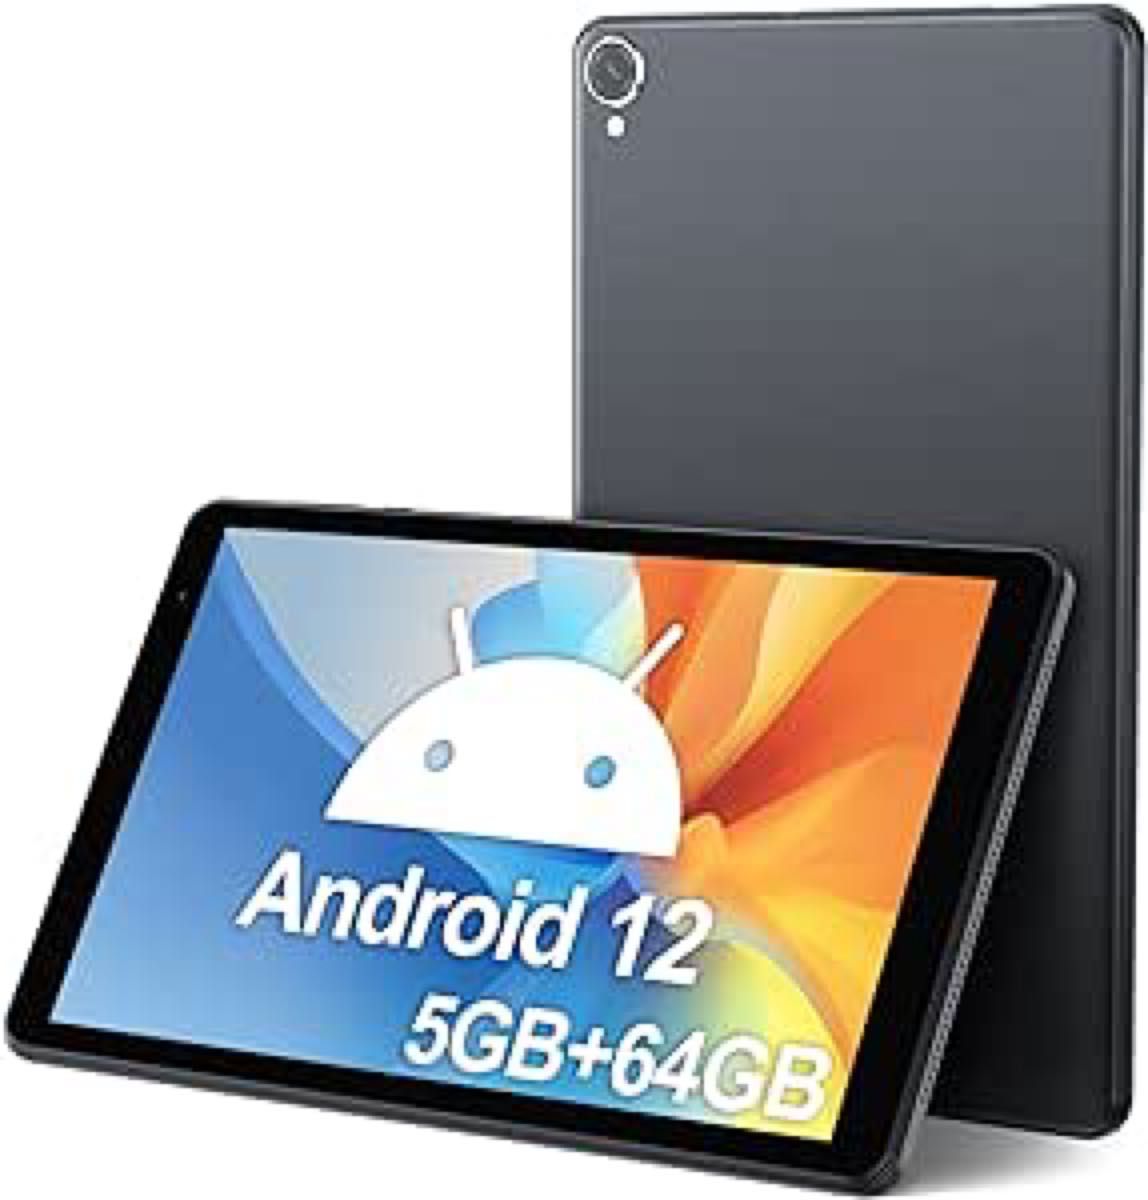  タブレット 8インチ  5GB+64GB Android 12 5580mAh大容量バッテリー 1280*800解像度 グレー